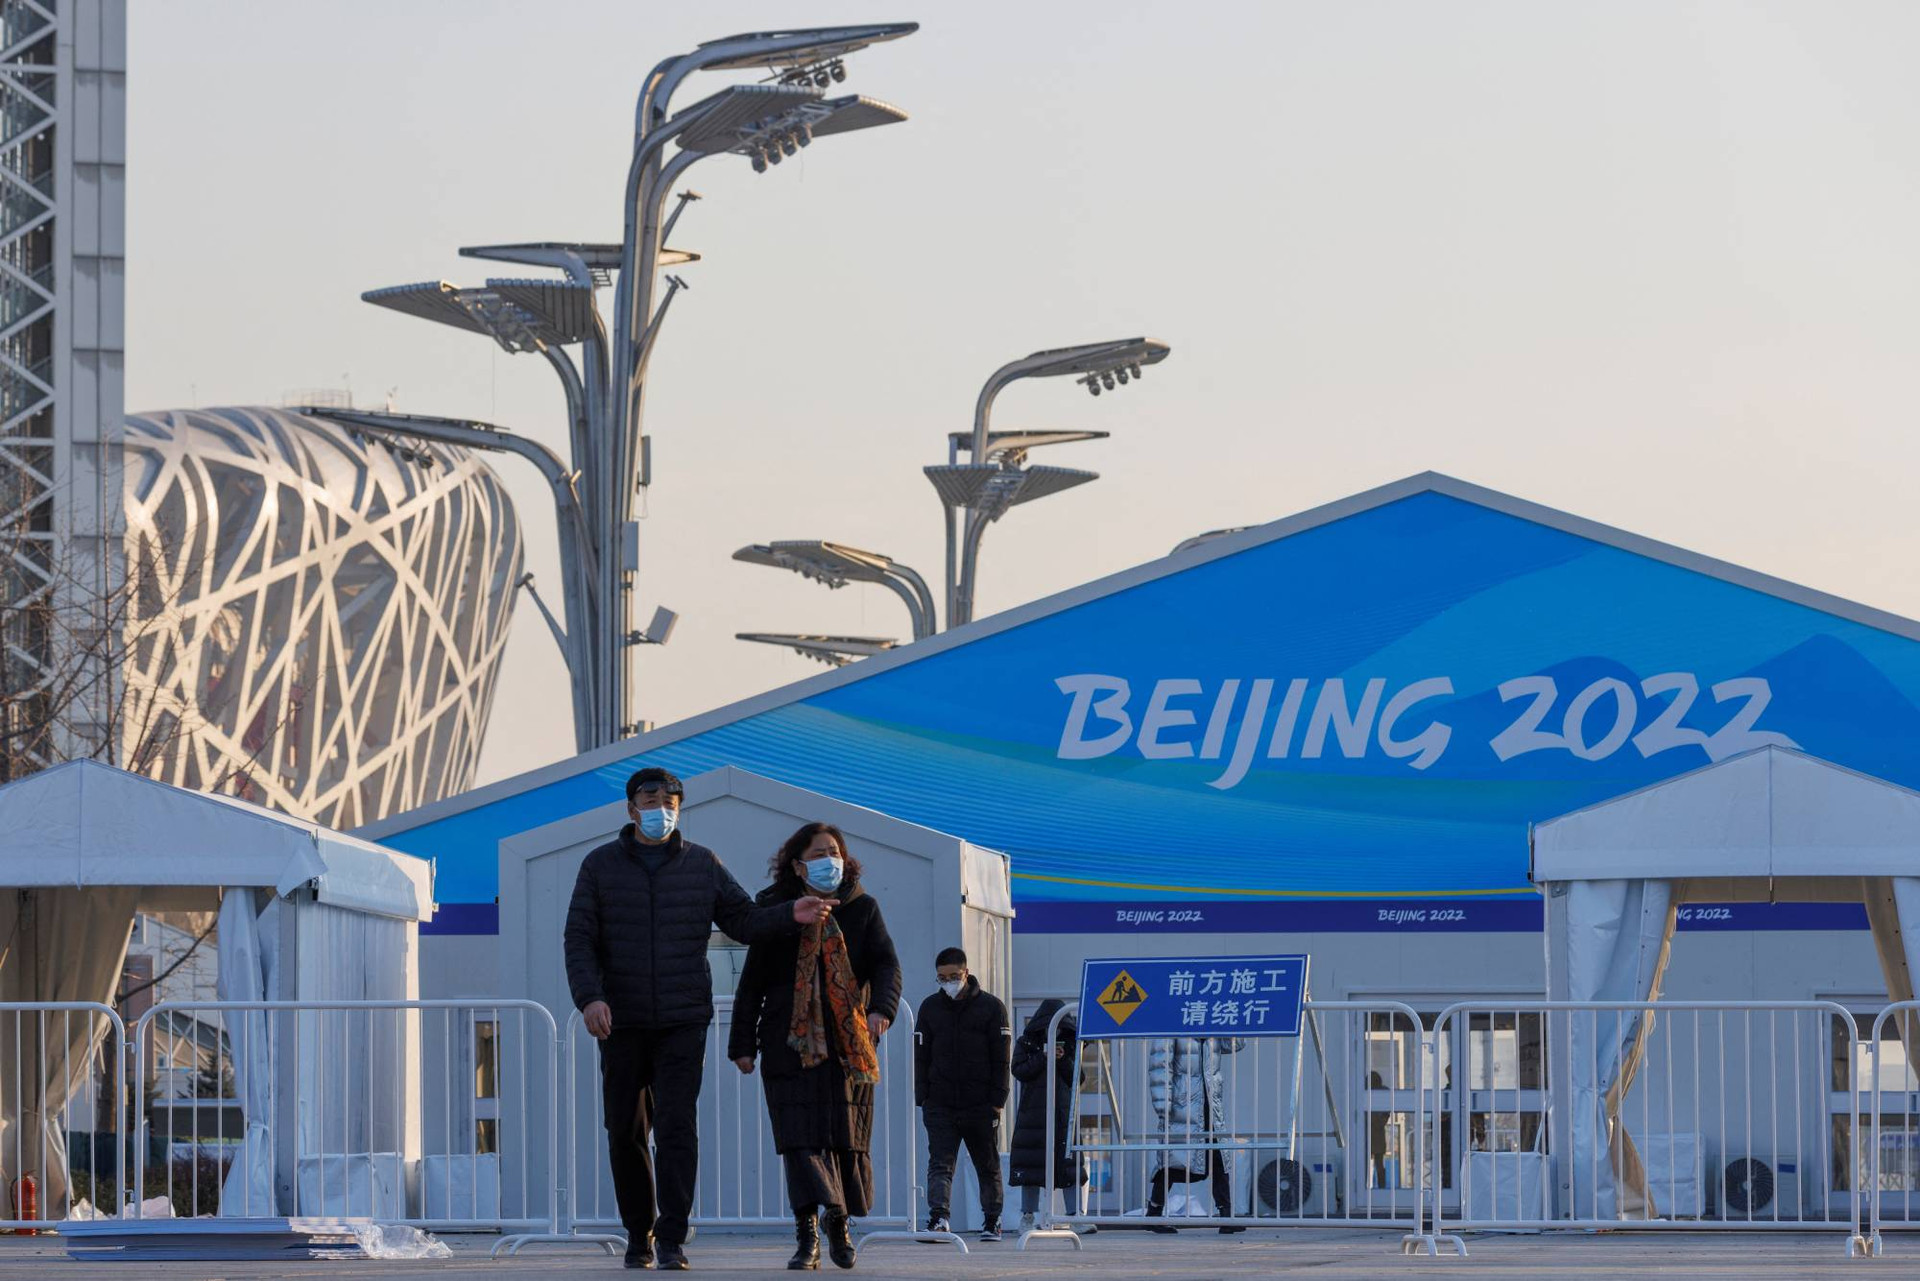 Olympic mùa Đông Bắc Kinh 2022 trang bị sức mạnh công nghệ cho truyền hình, nhà báo - Ảnh 1.